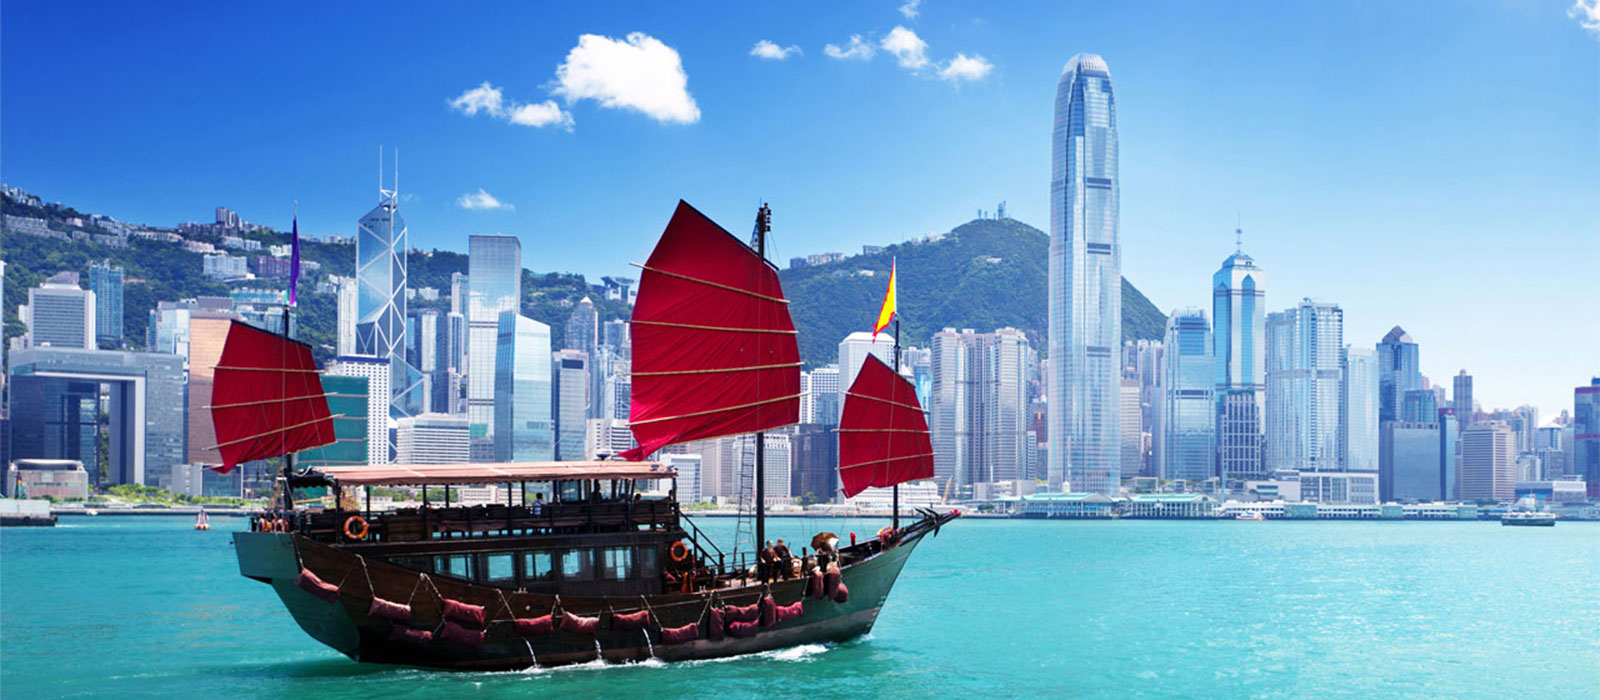 Cẩm nang - Kinh nghiệm - Guide book - sổ tay du lịch Hồng Kông